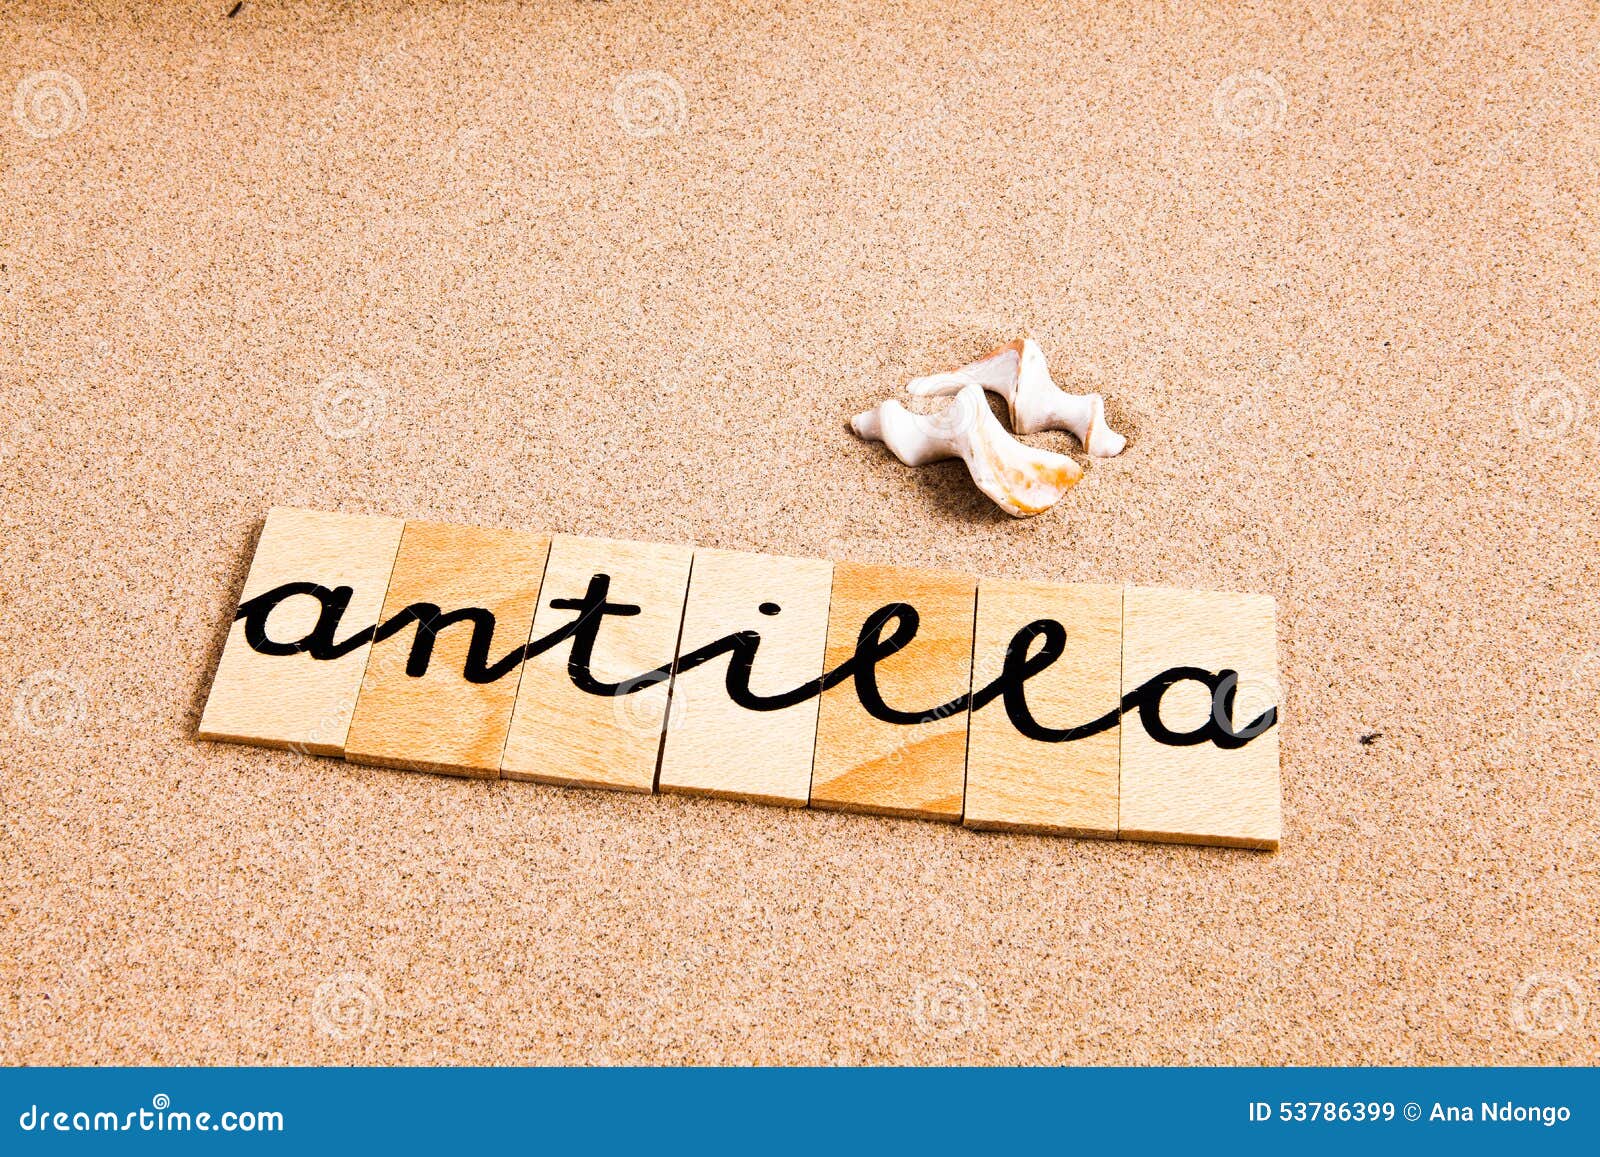 words on sand anitilla